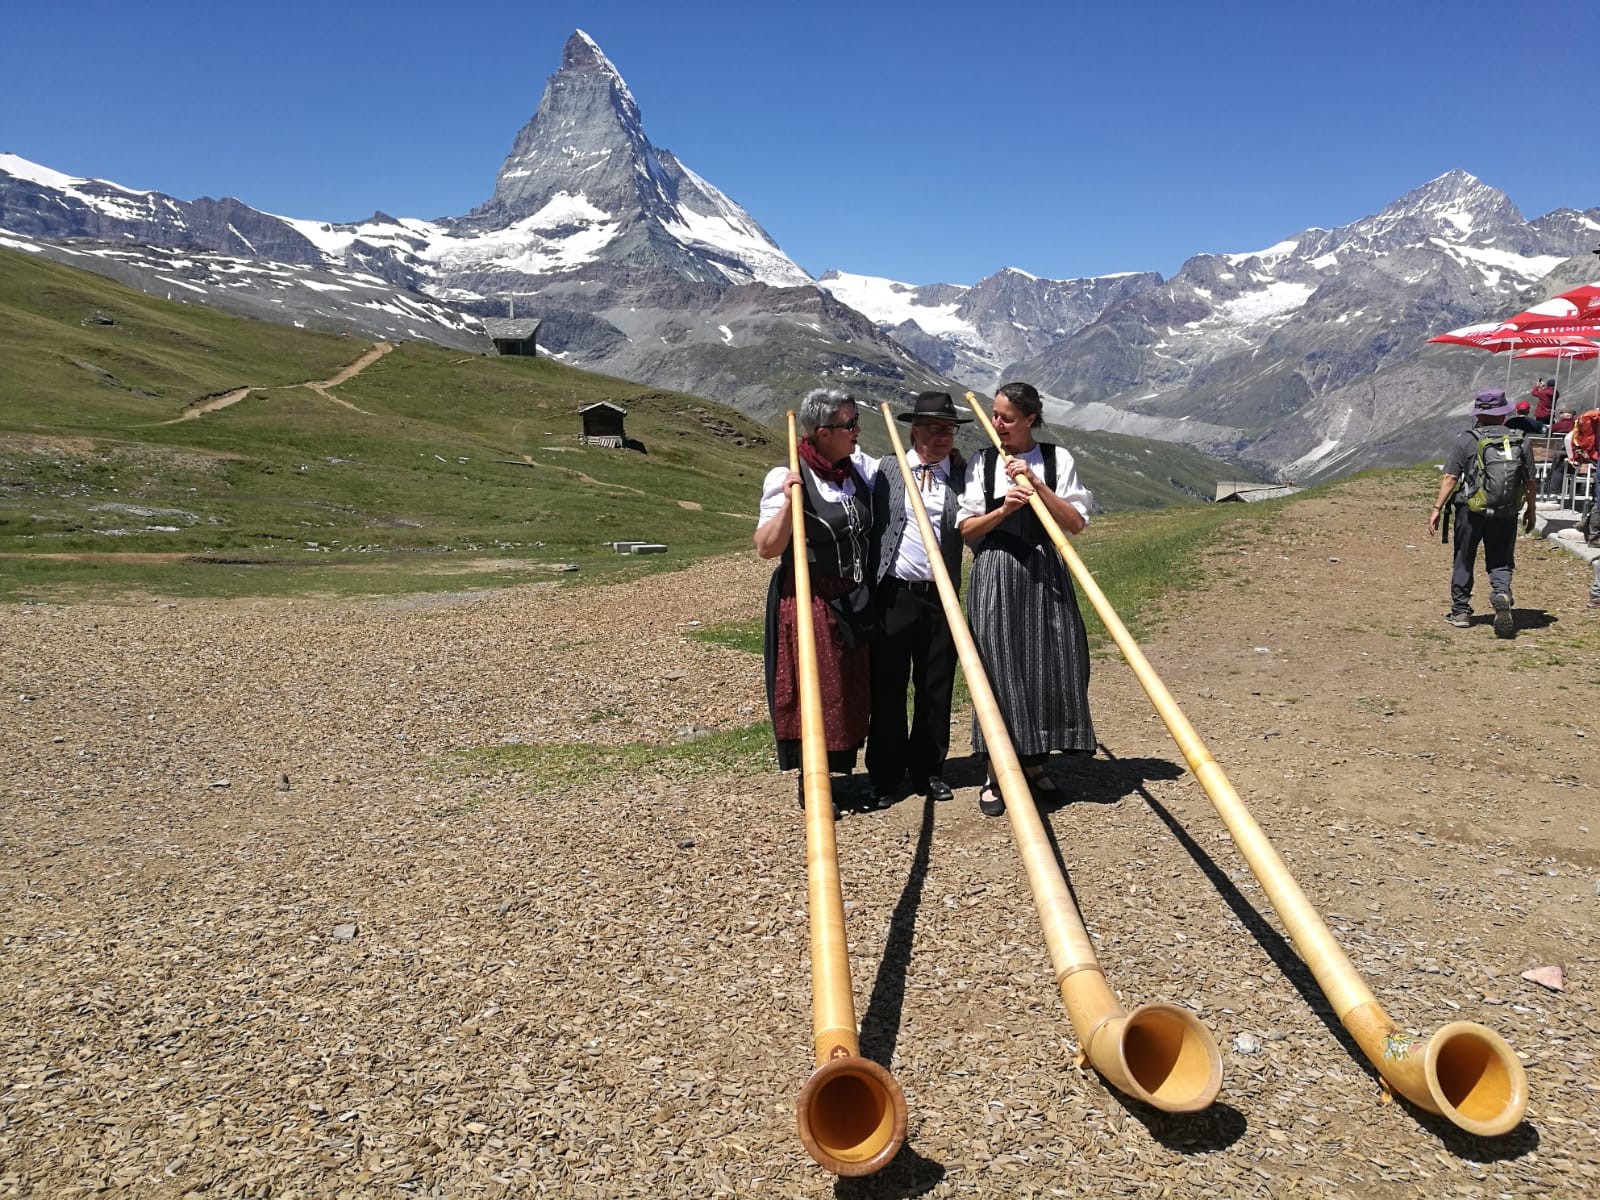 Alphorntrios “vibrazioni arcaiche” mit Matterhorn